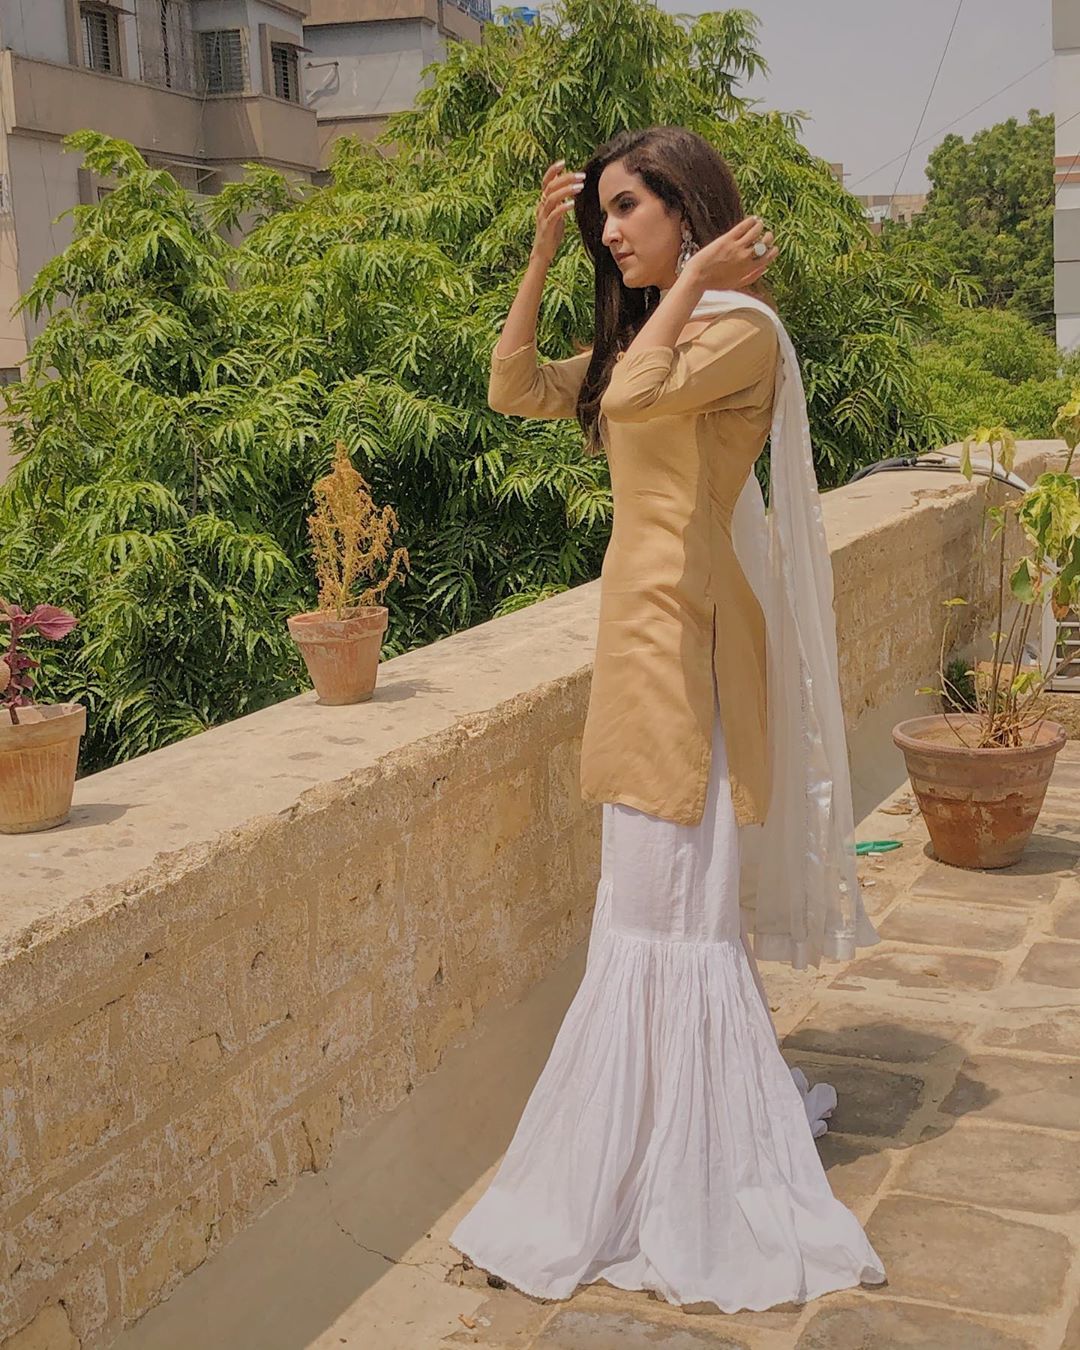 Beautiful Pictures of Actress Anoushy Abbasi